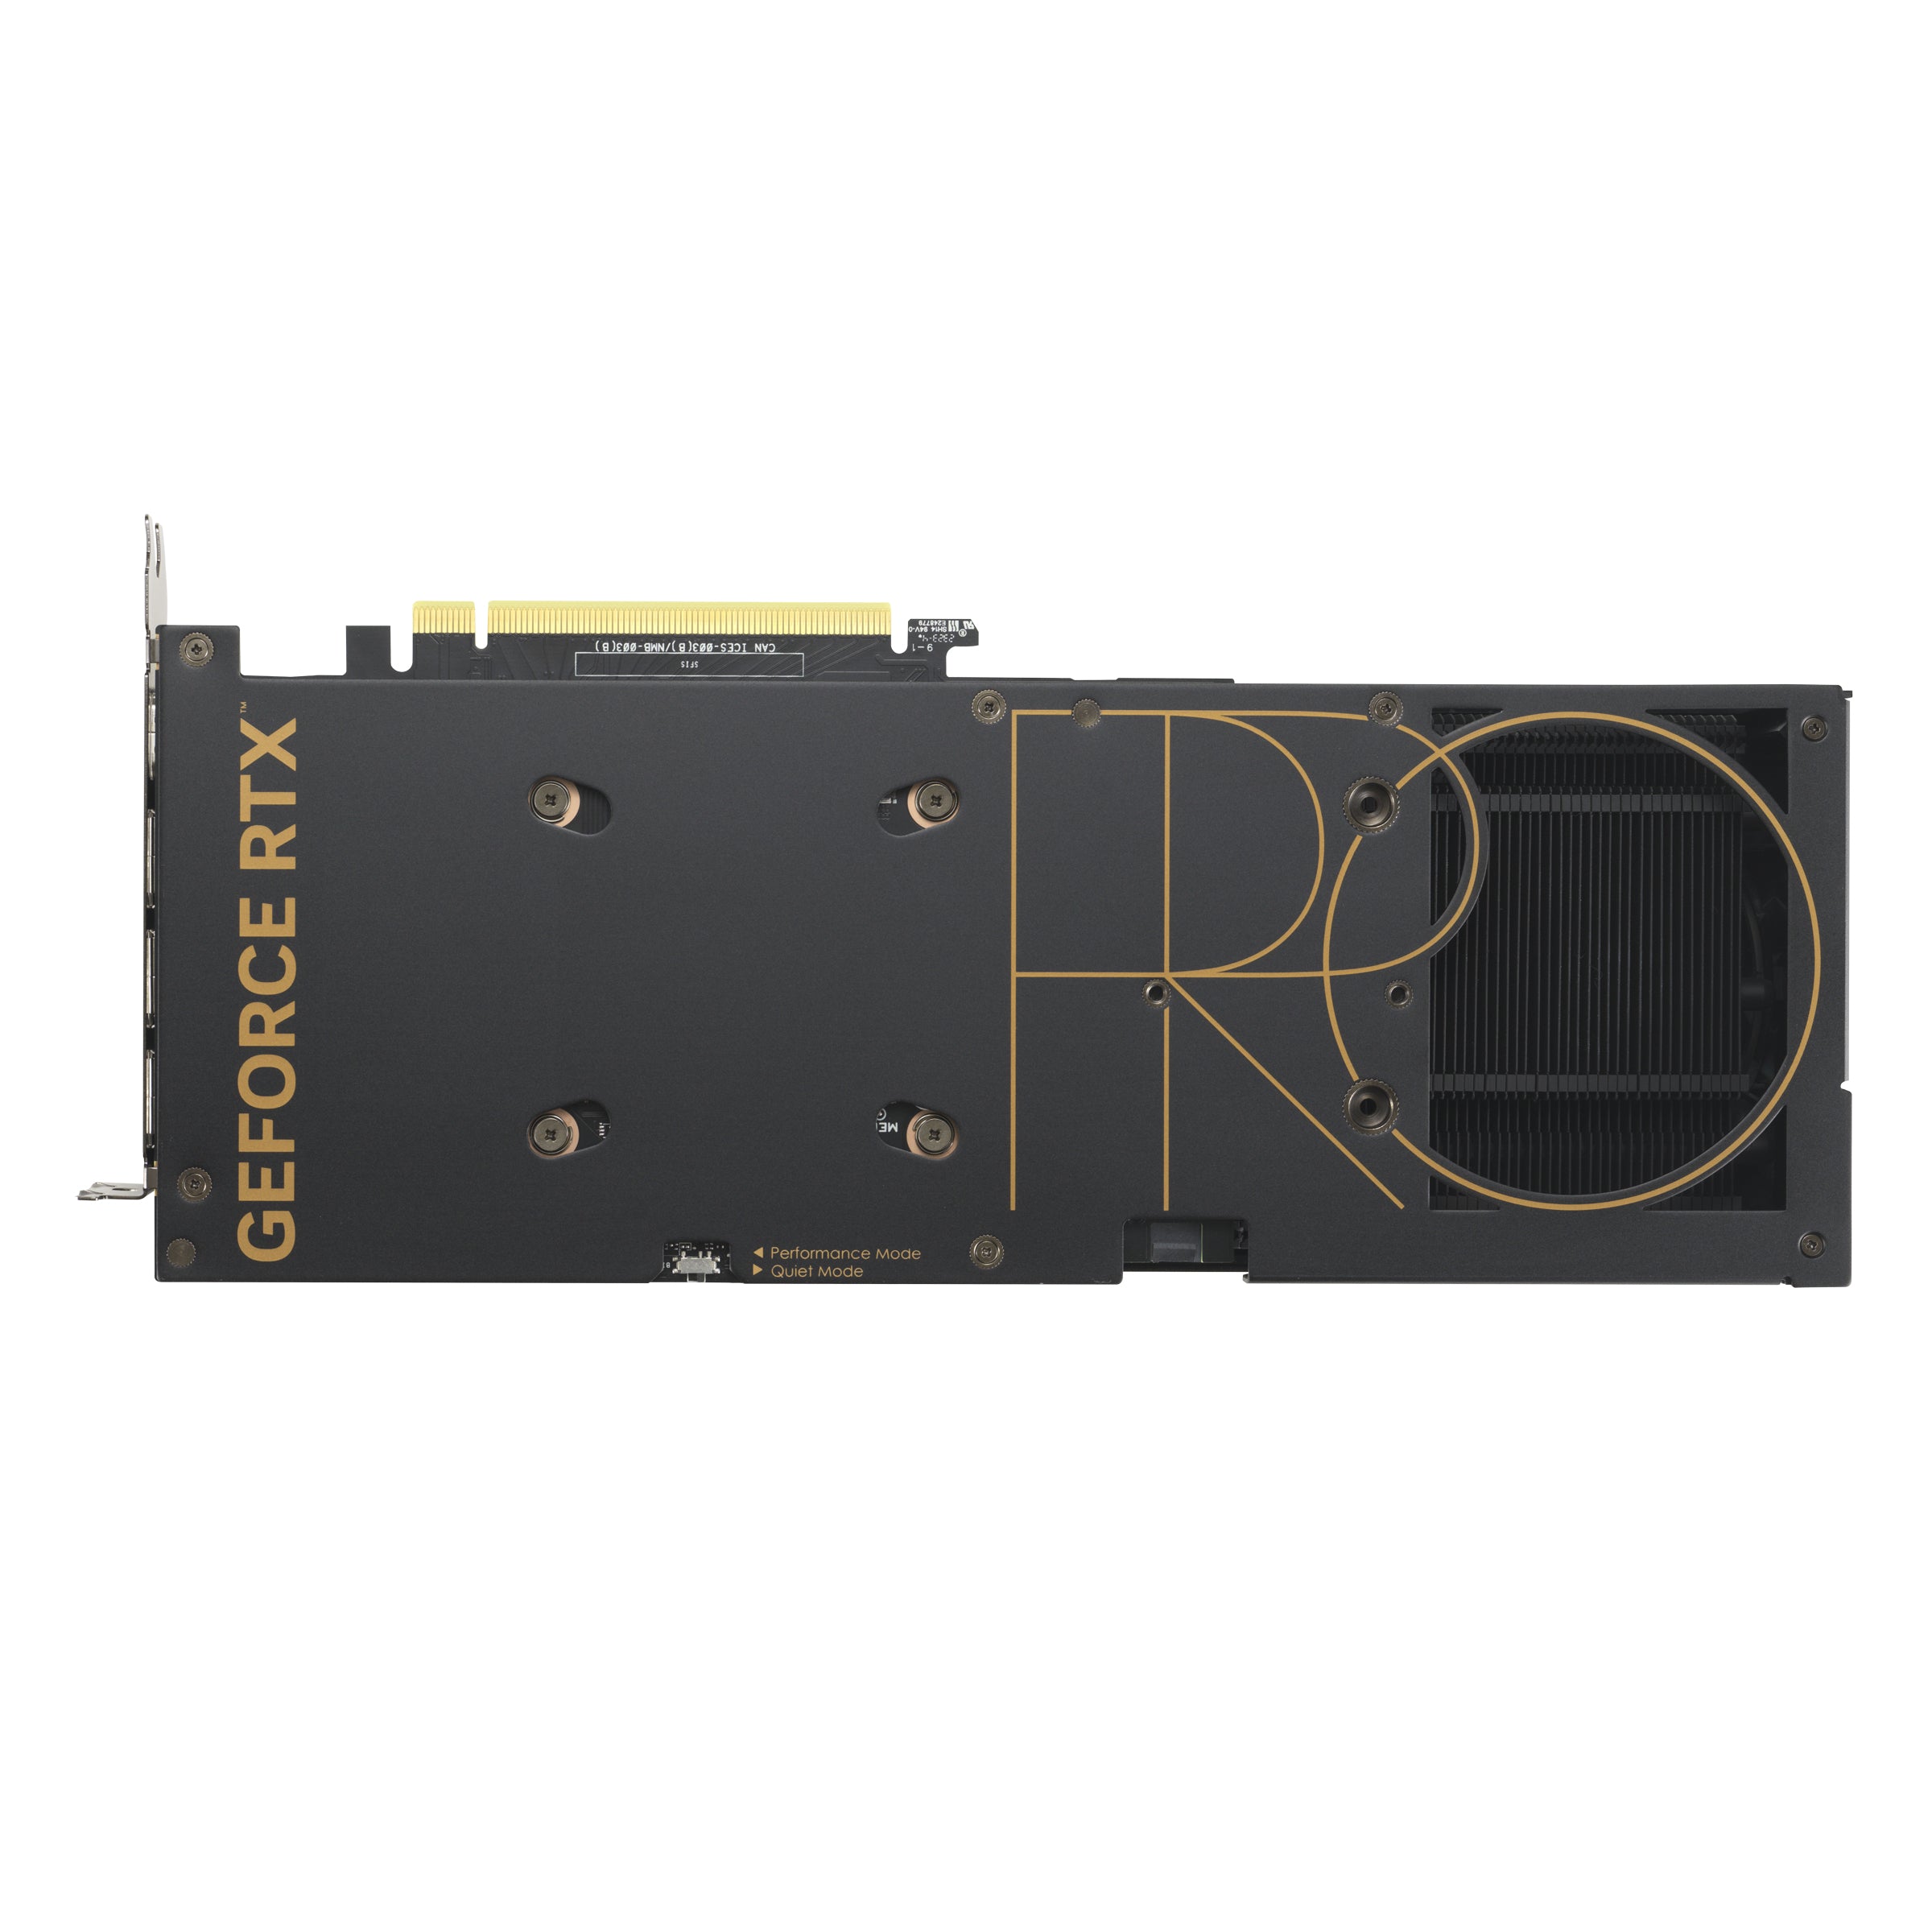 ASUS GeForce RTX 4070 12GB GDDR6X OC PROART